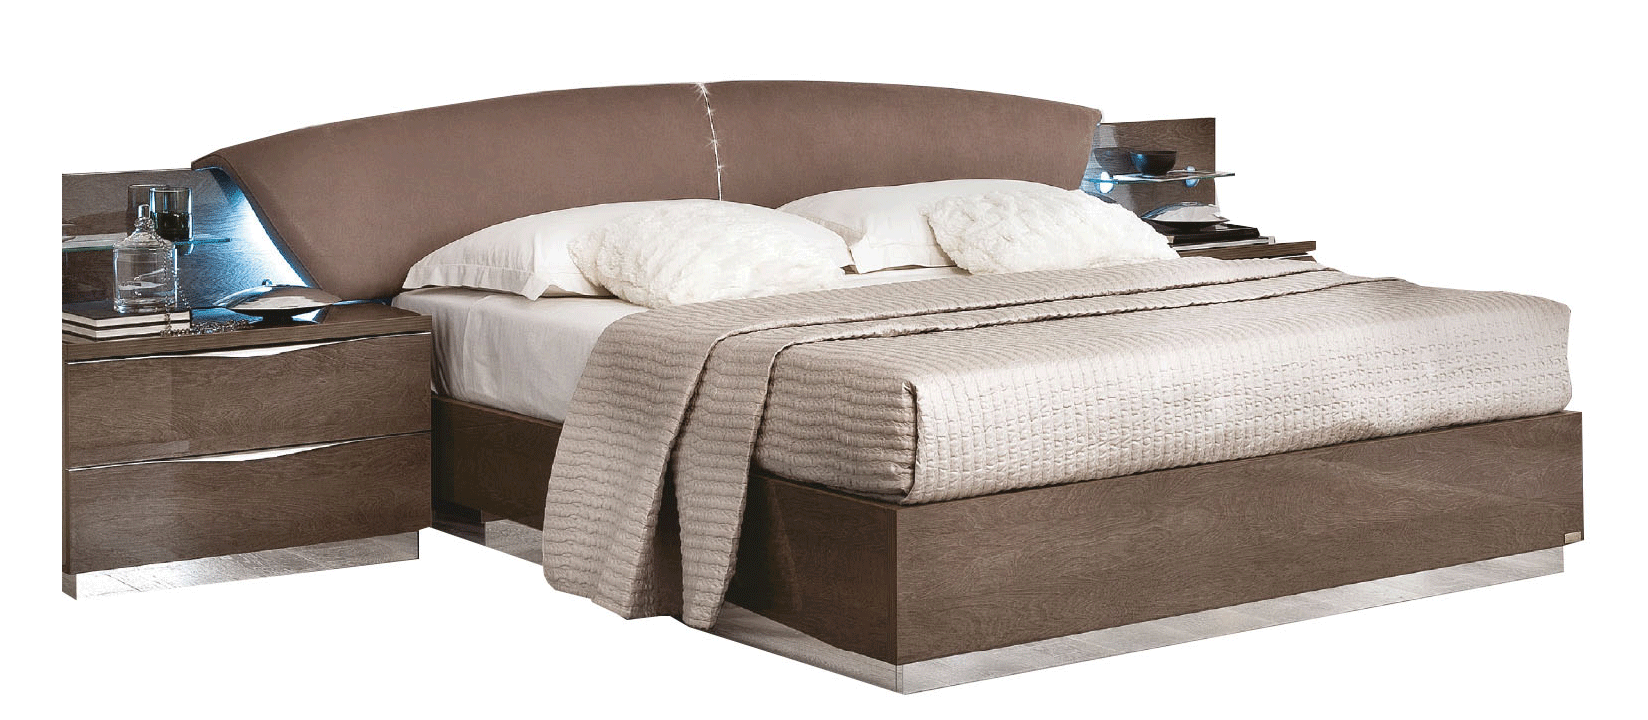 Bedroom Furniture Nightstands Platinum DROP Bed SILVER BIRCH